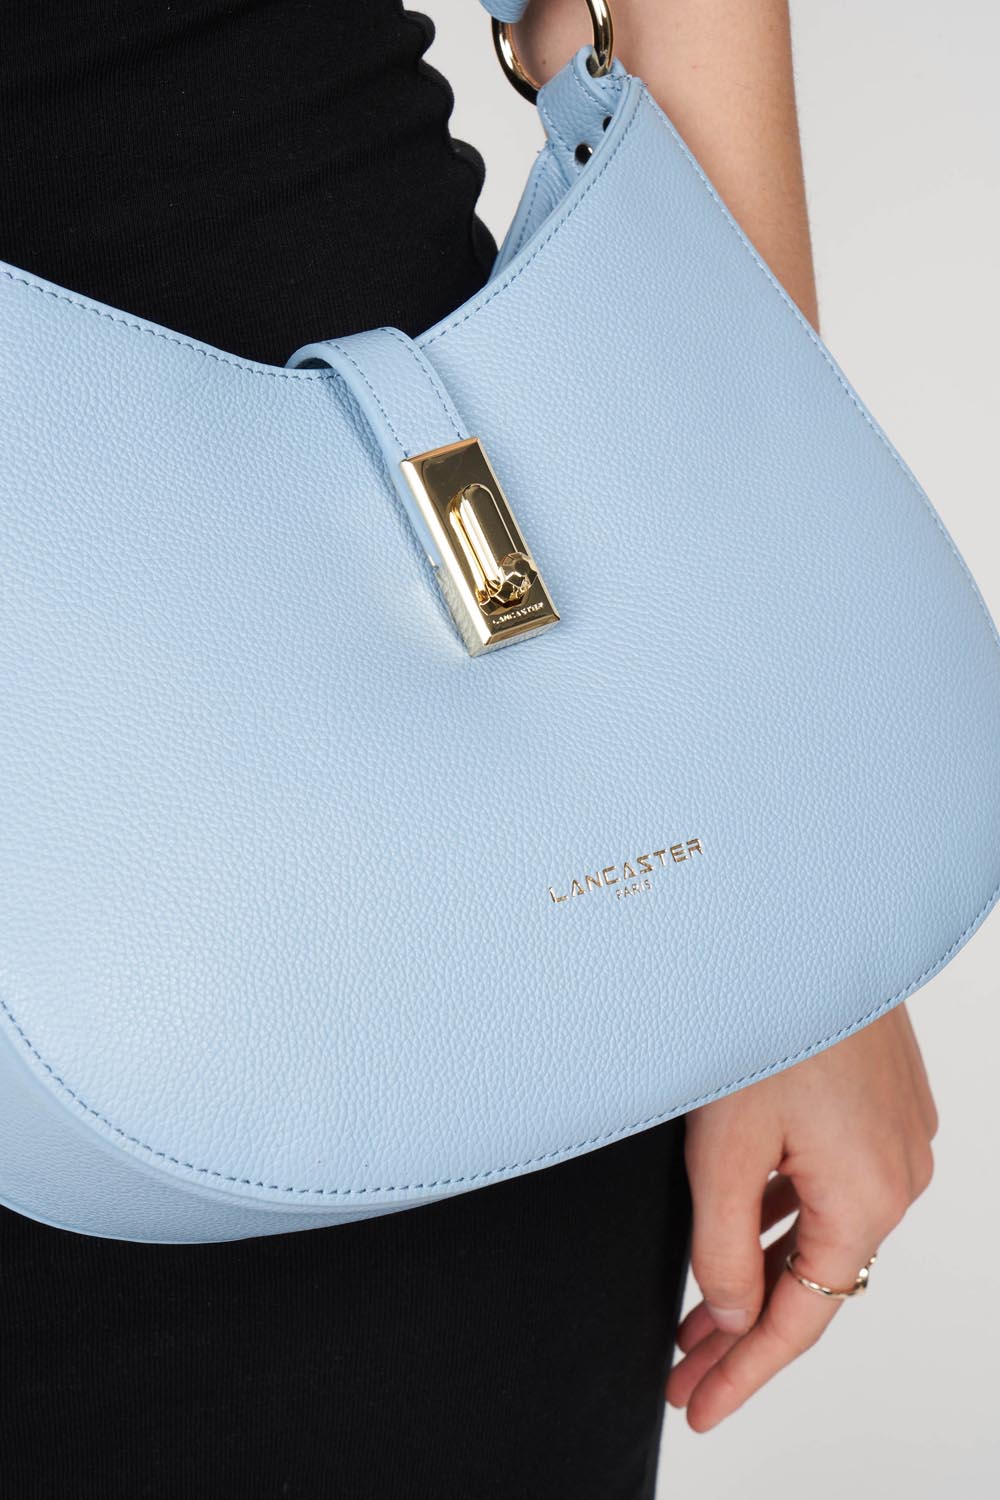 m shoulder bag - foulonné milano #couleur_bleu-ciel